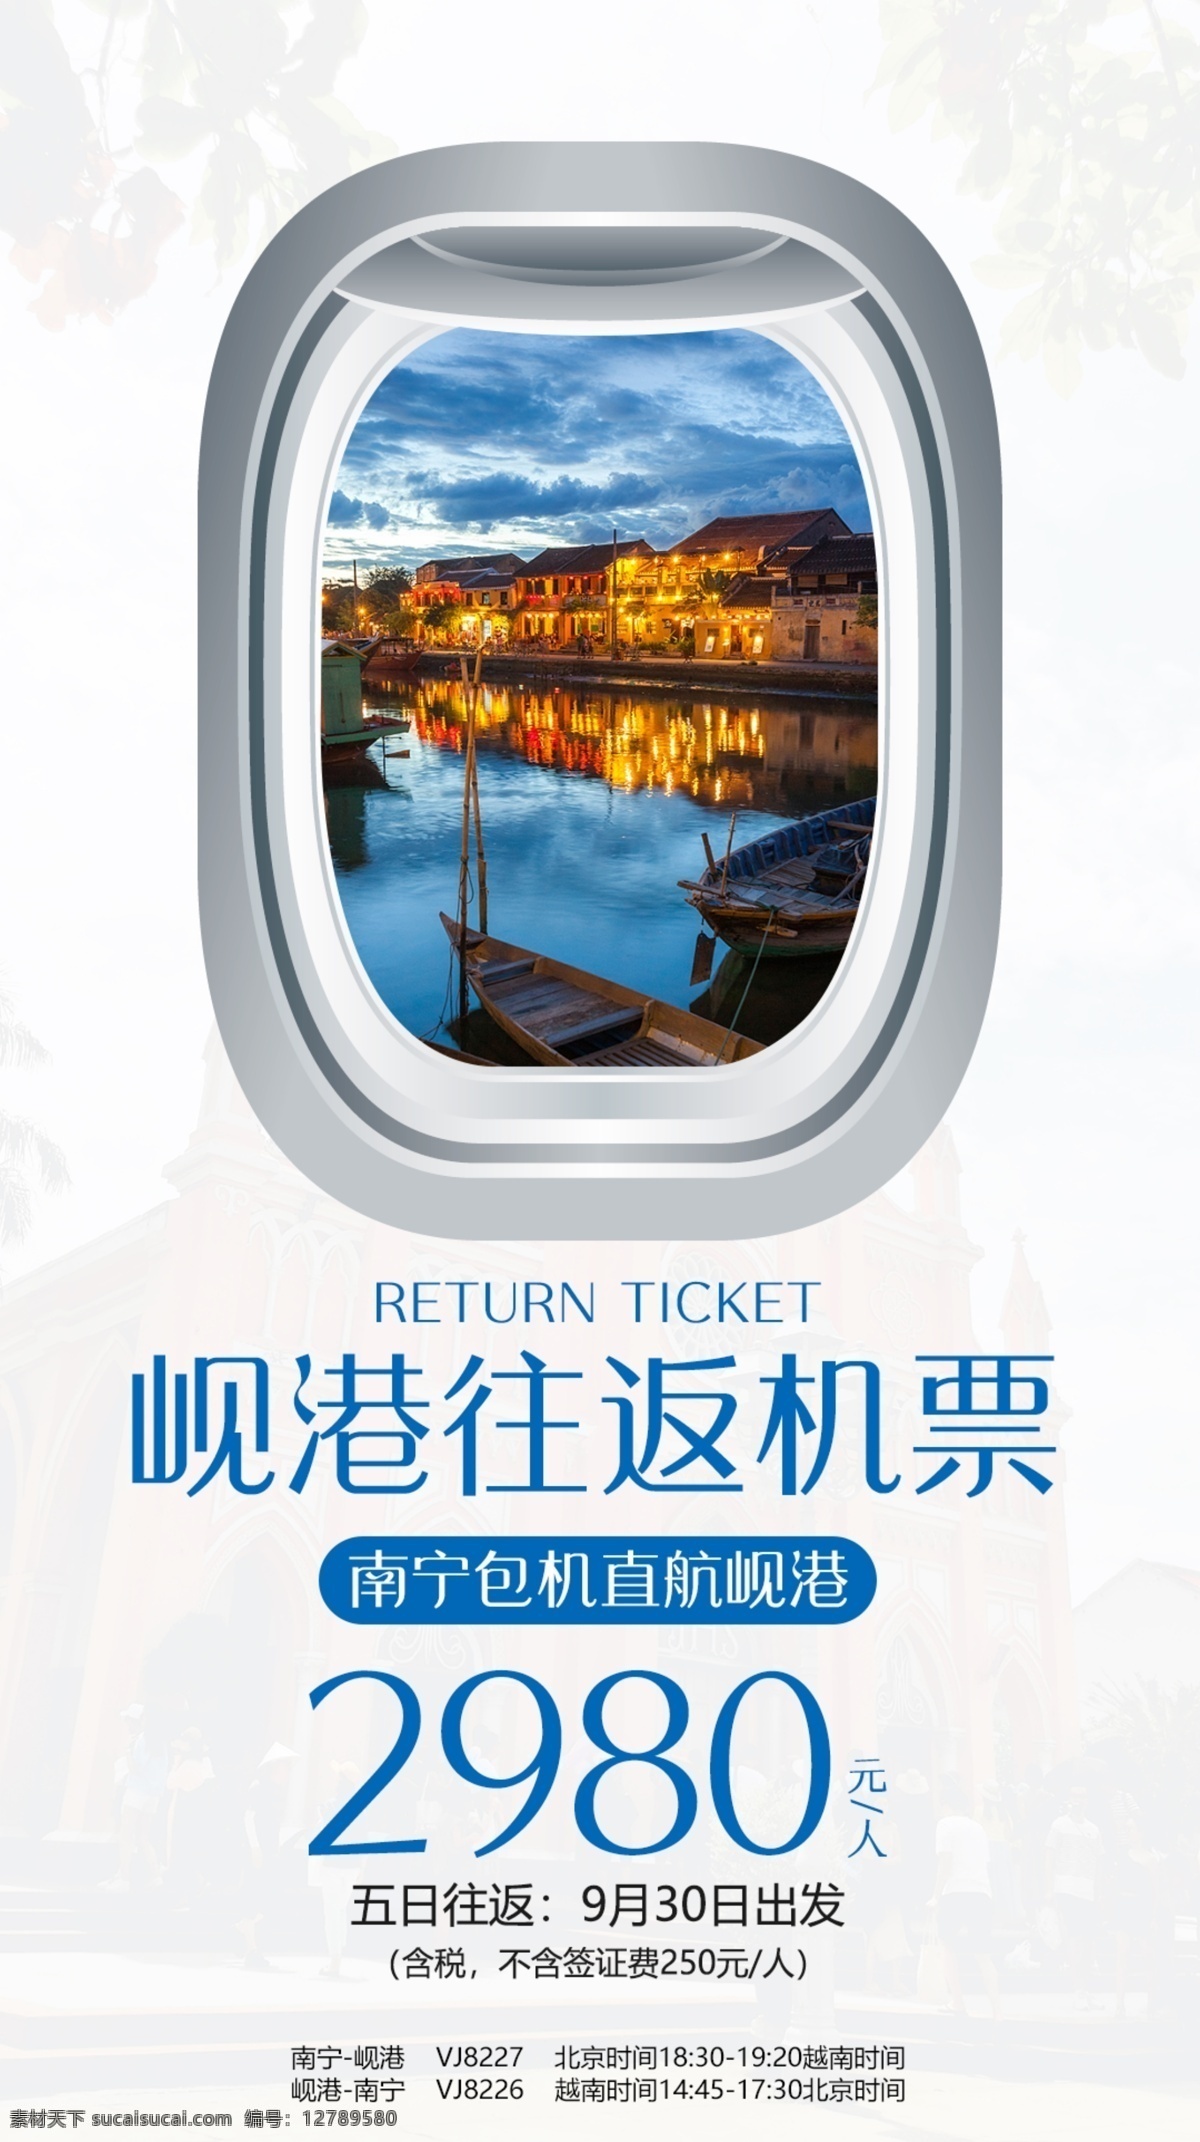 岘港机票 越南岘港 旅游 往返机票 飞机窗口 简约 东南亚 朋友圈广告